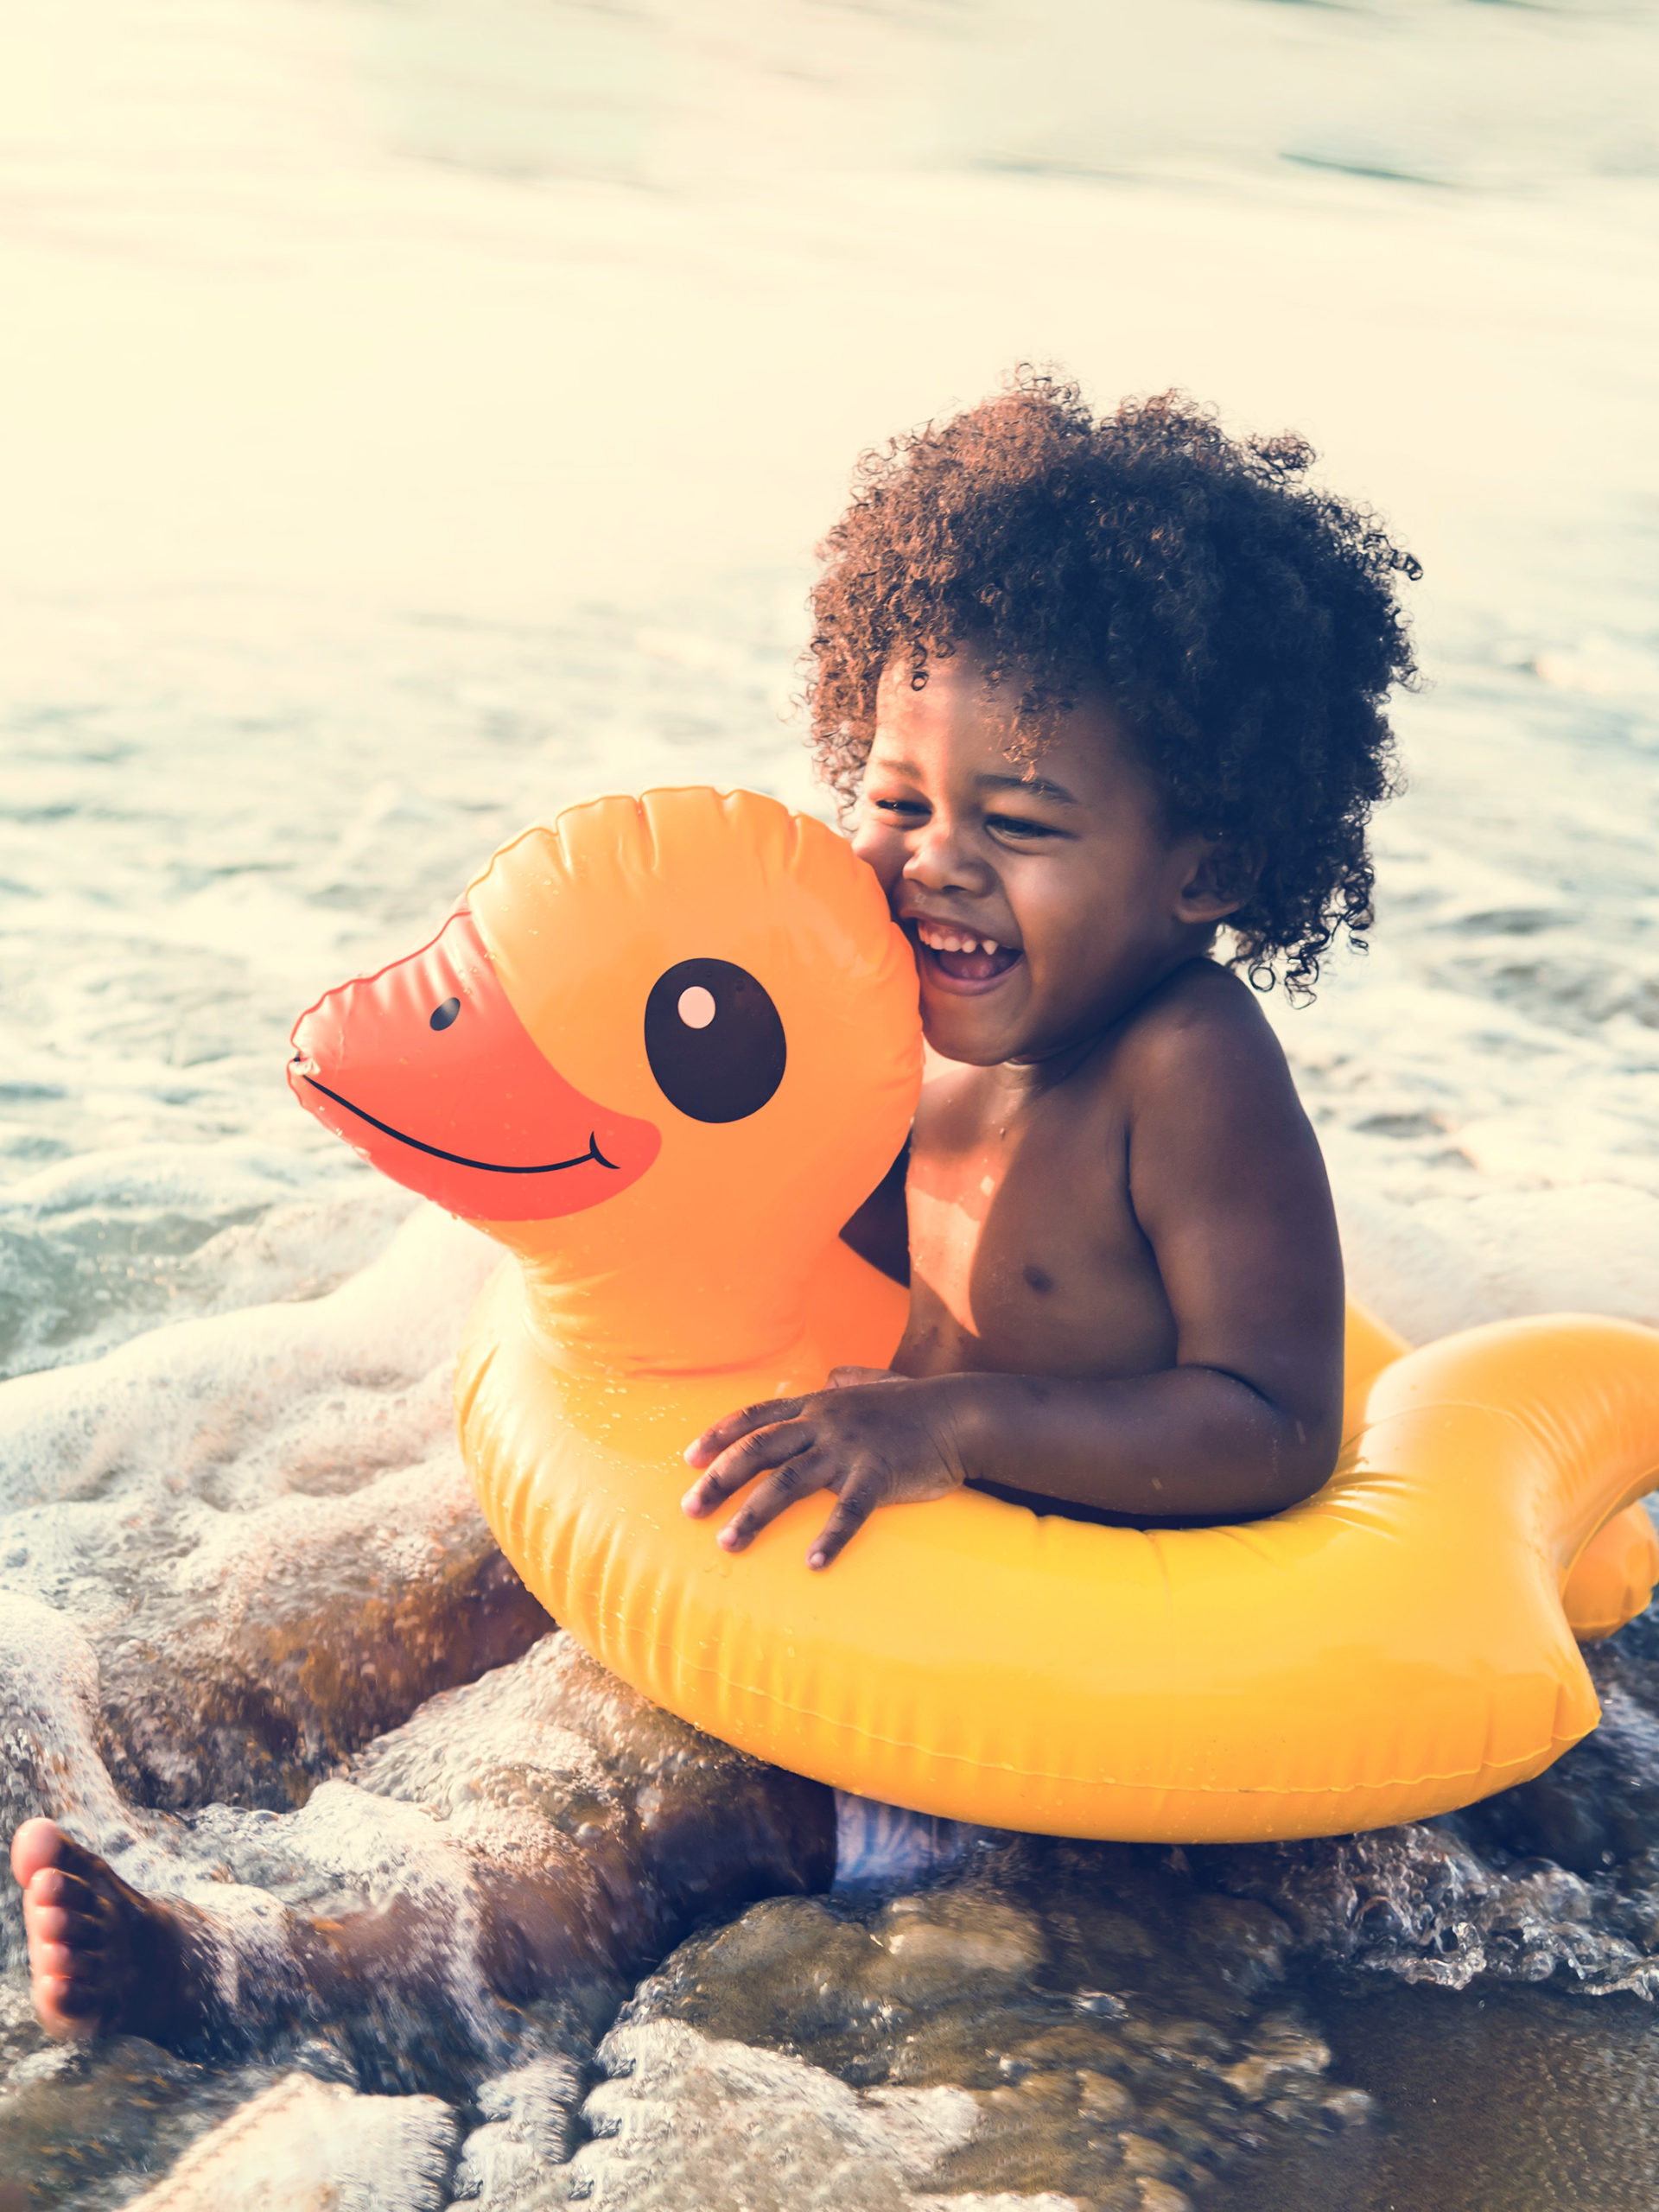 Little boy smiling in ocean water in a yellow duck floaty